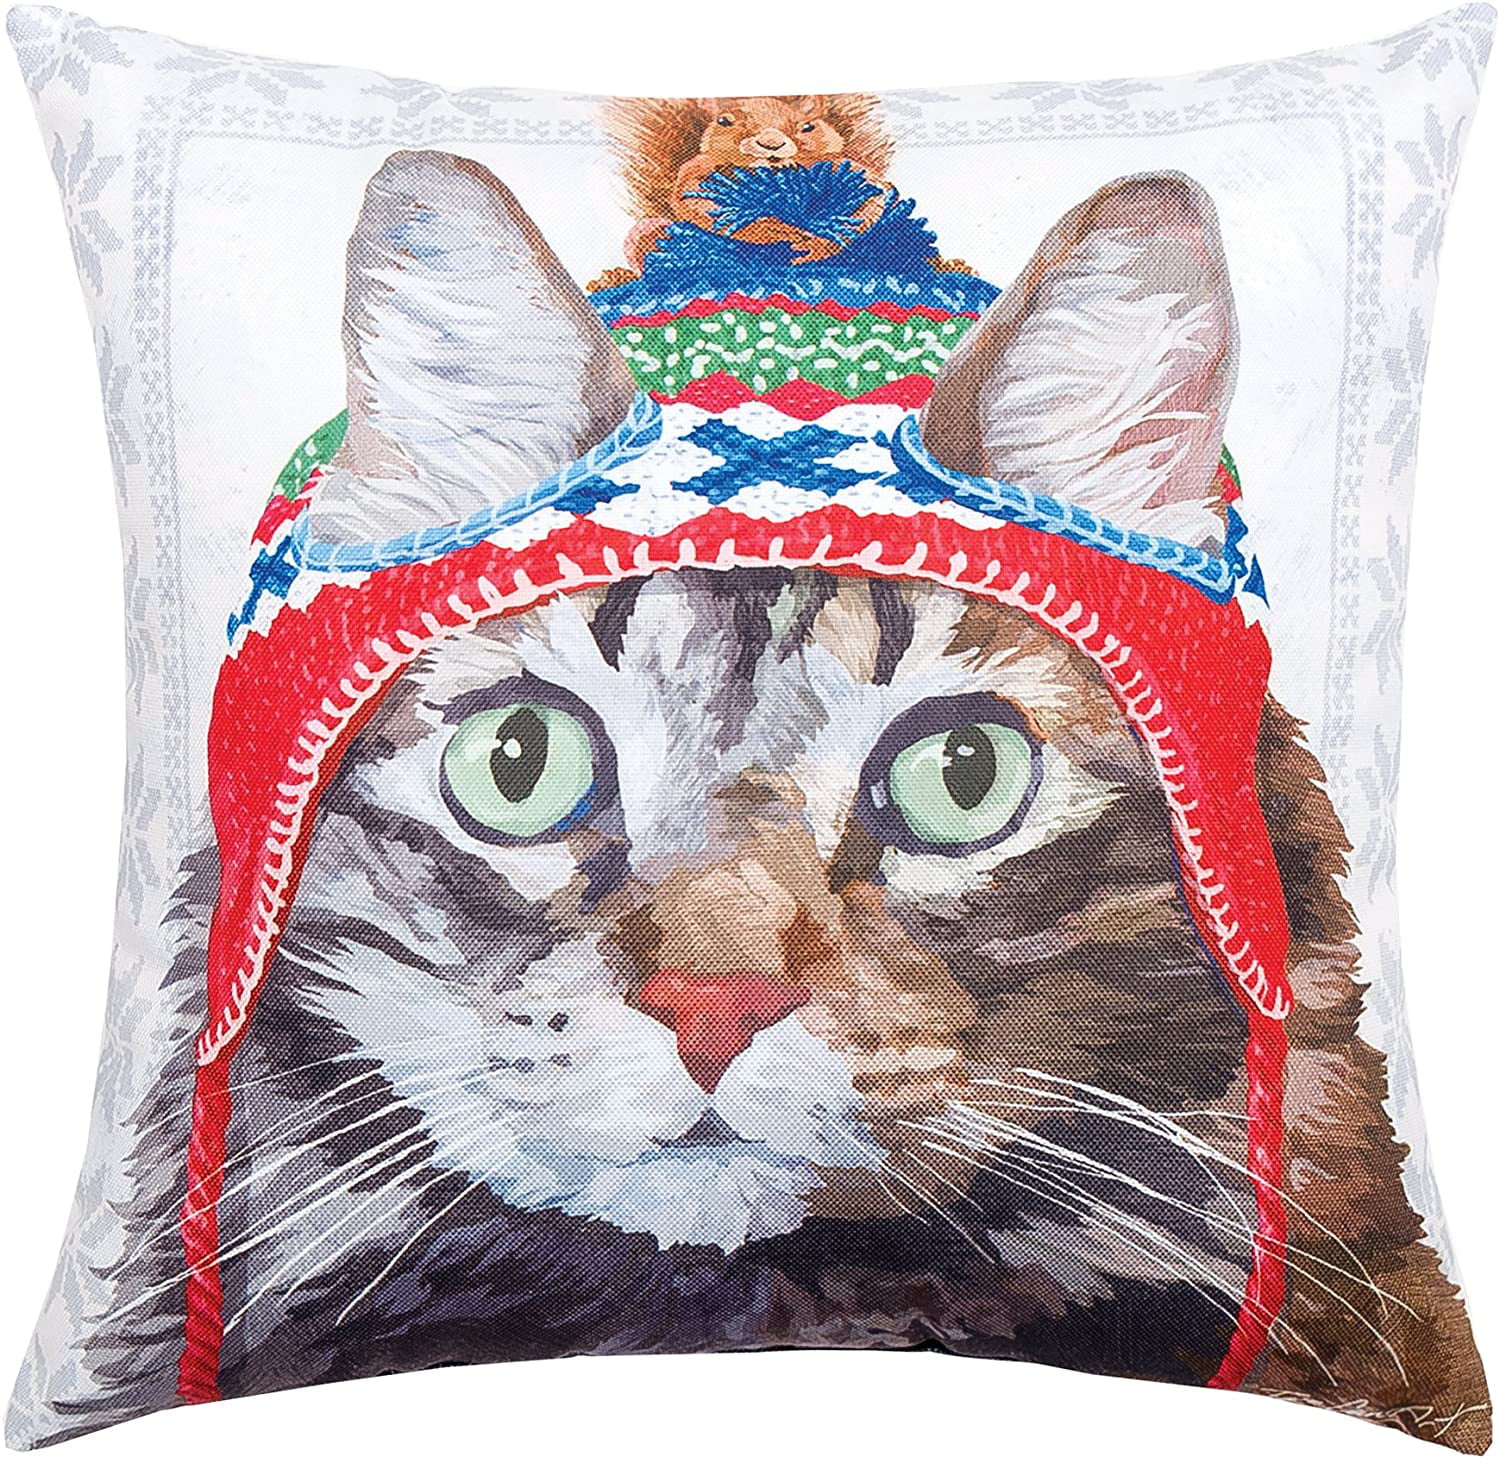 18" European Style Cute Book Cat Party Cushion linen Throw Pillowcase Home Deco 